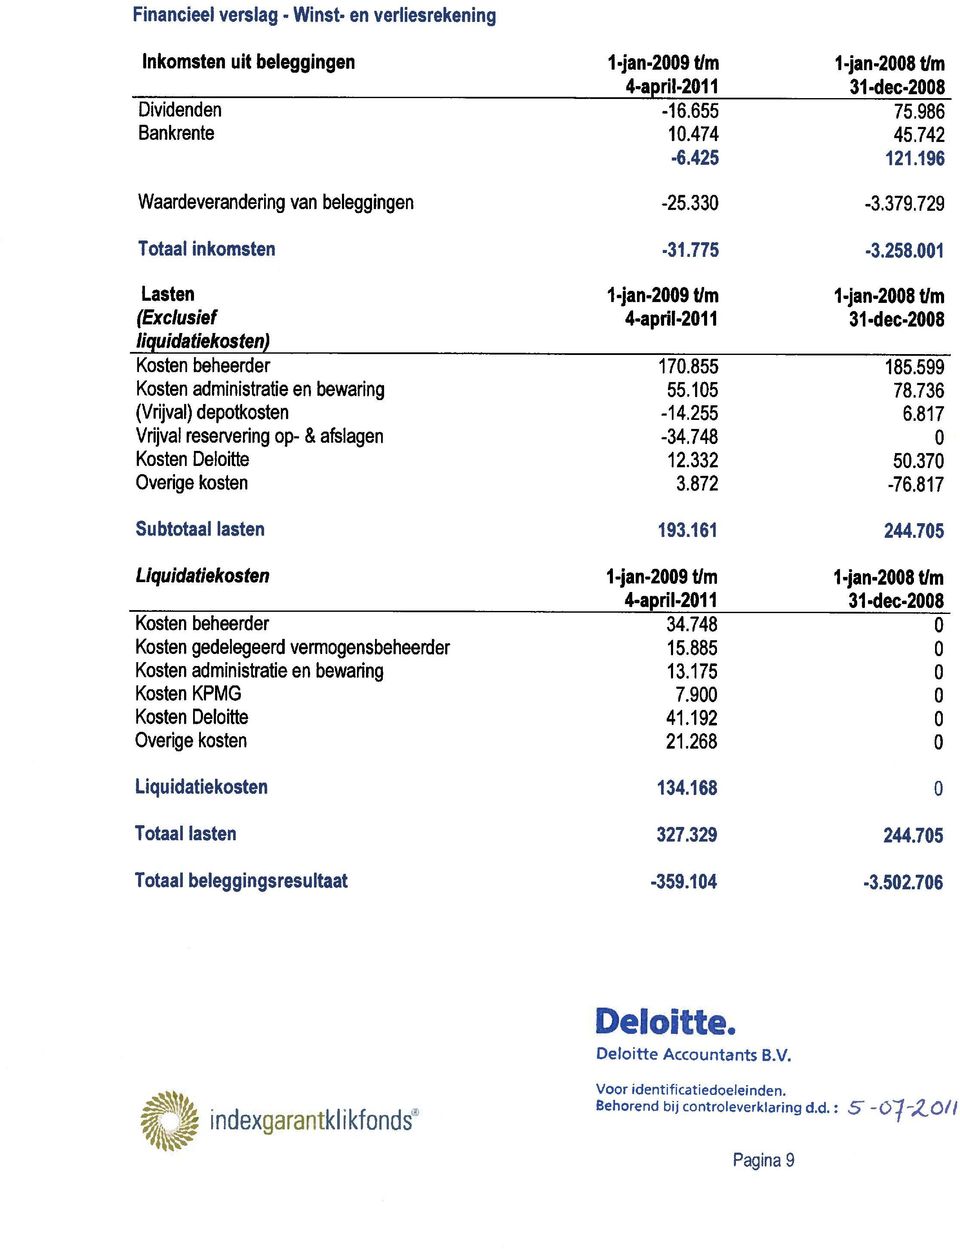 599 Kosten administratie en bewaring 55.15 78.736 (Vrijval) depotkosten -14.255 6.8 17 Vrijval reservering op- & afslagen -34.748 Kosten Deloitte 12.332 5.37 Overige kosten 3.872-76.